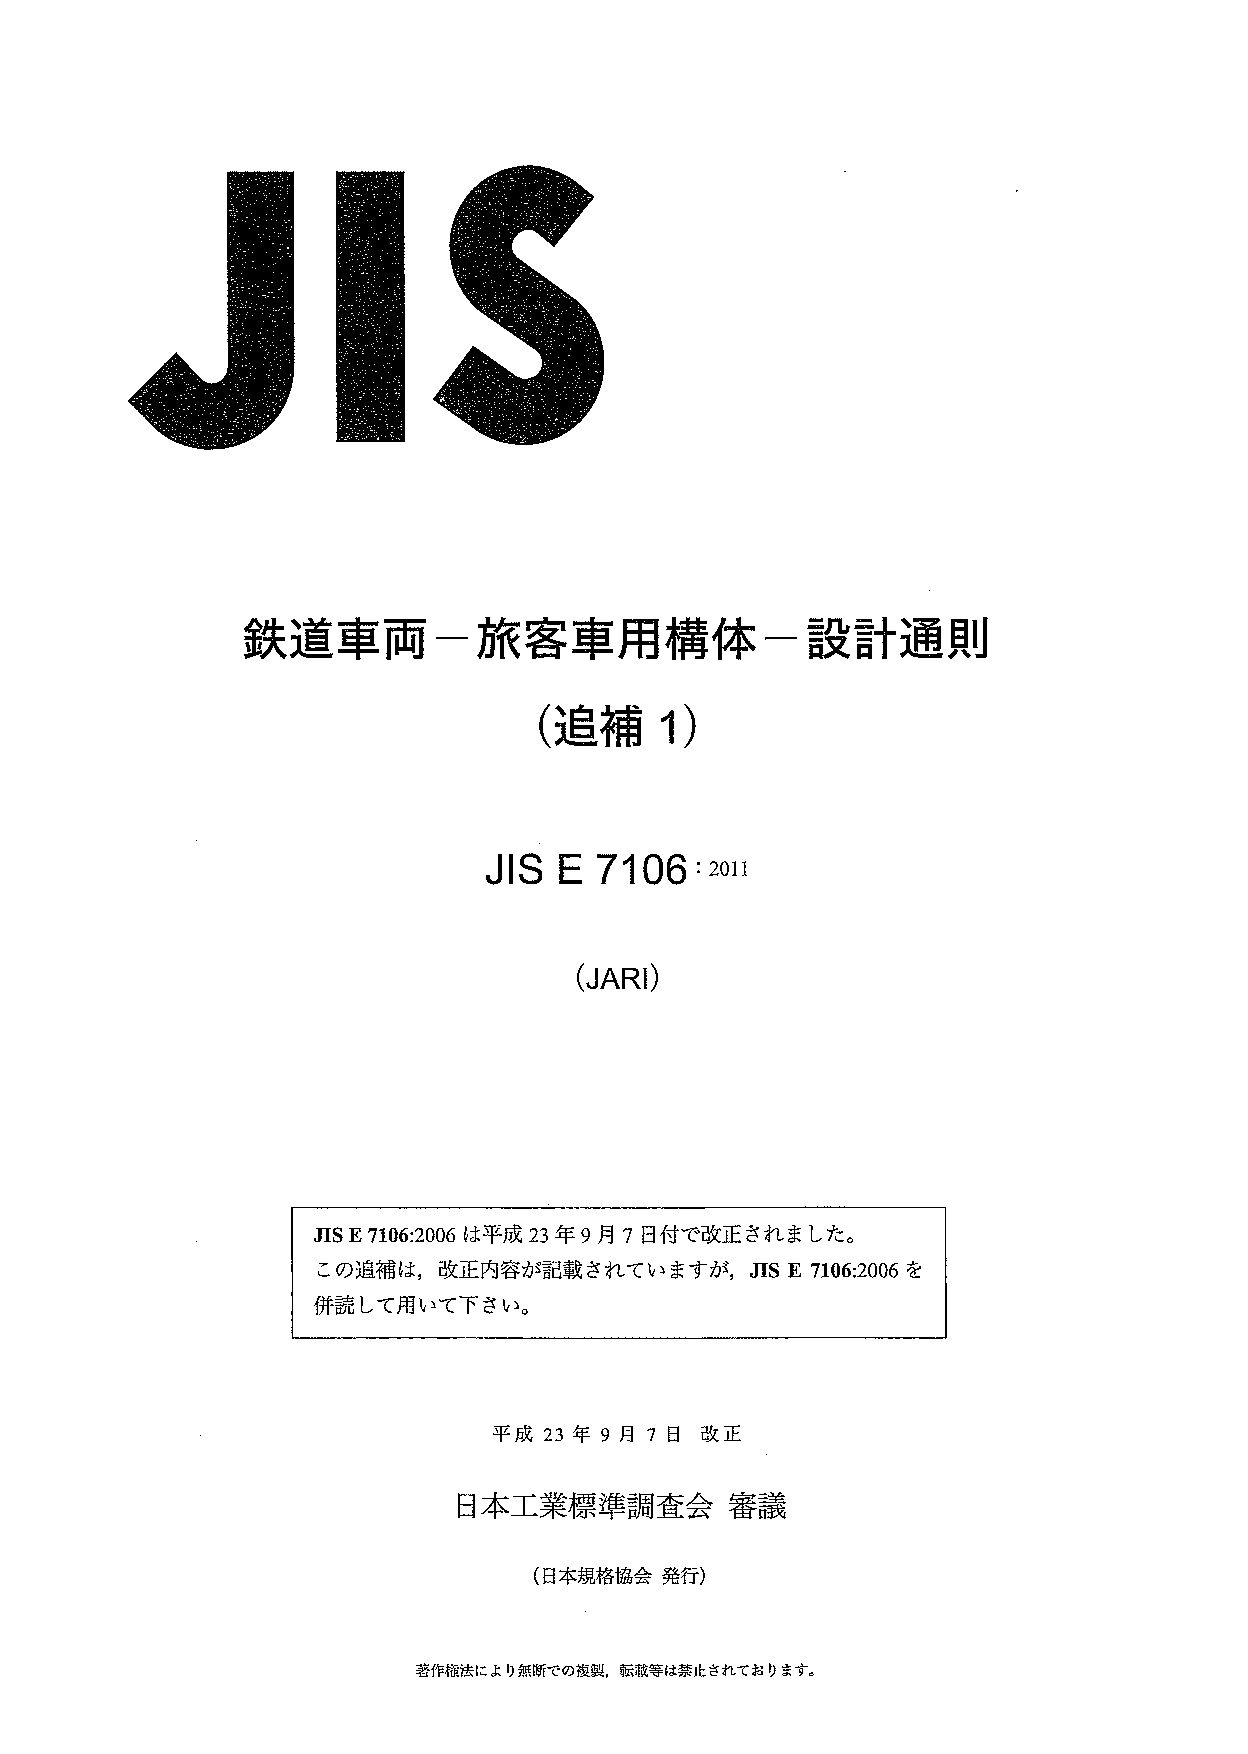 JIS E 7106 AMD 1:2011